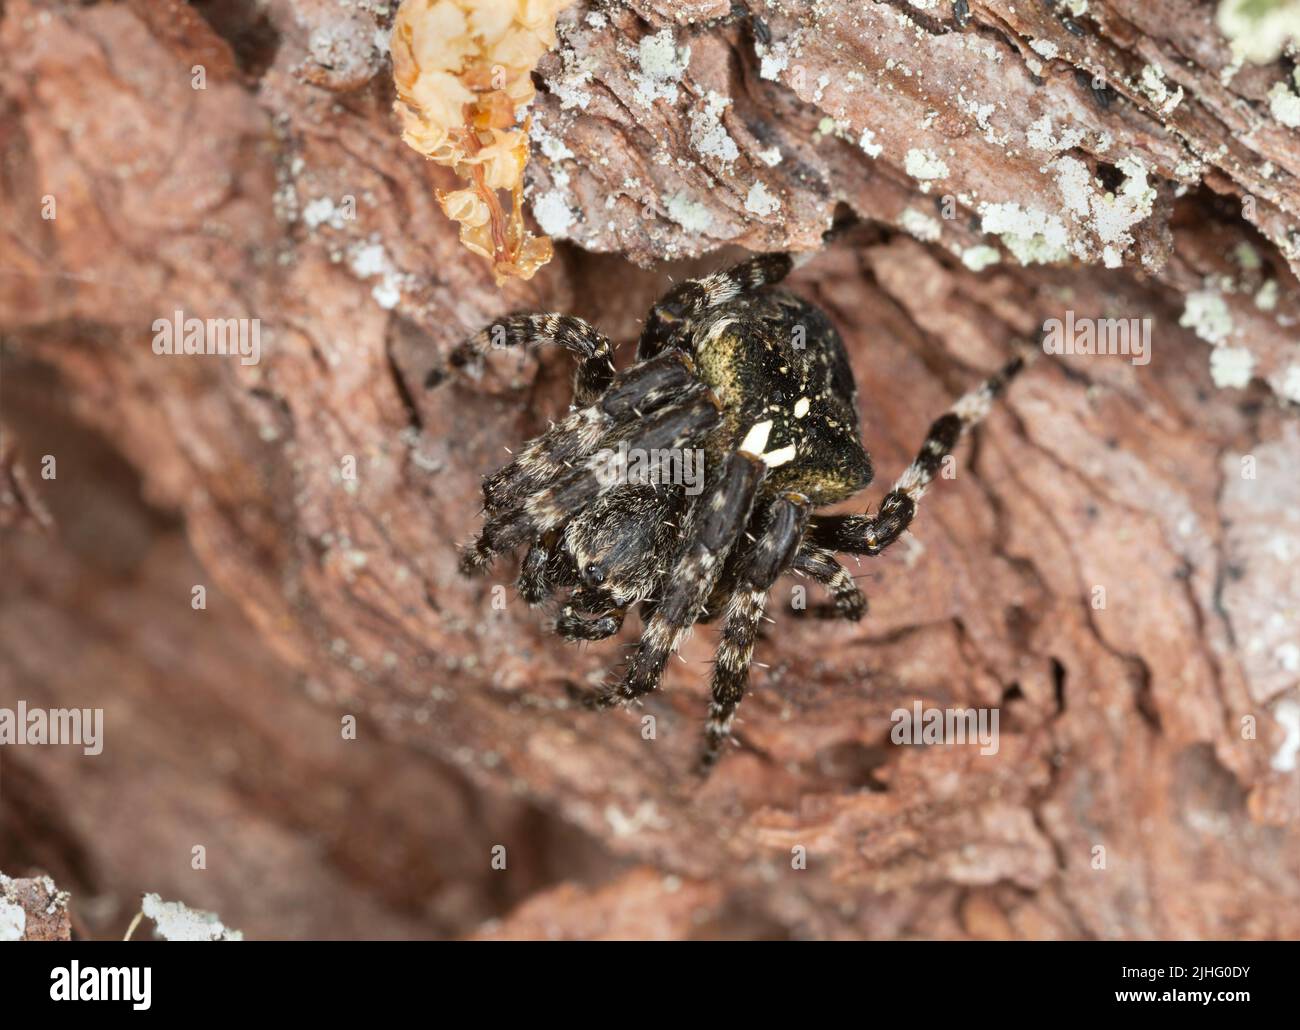 Araneus angulatus on pine bark, macro photo Stock Photo